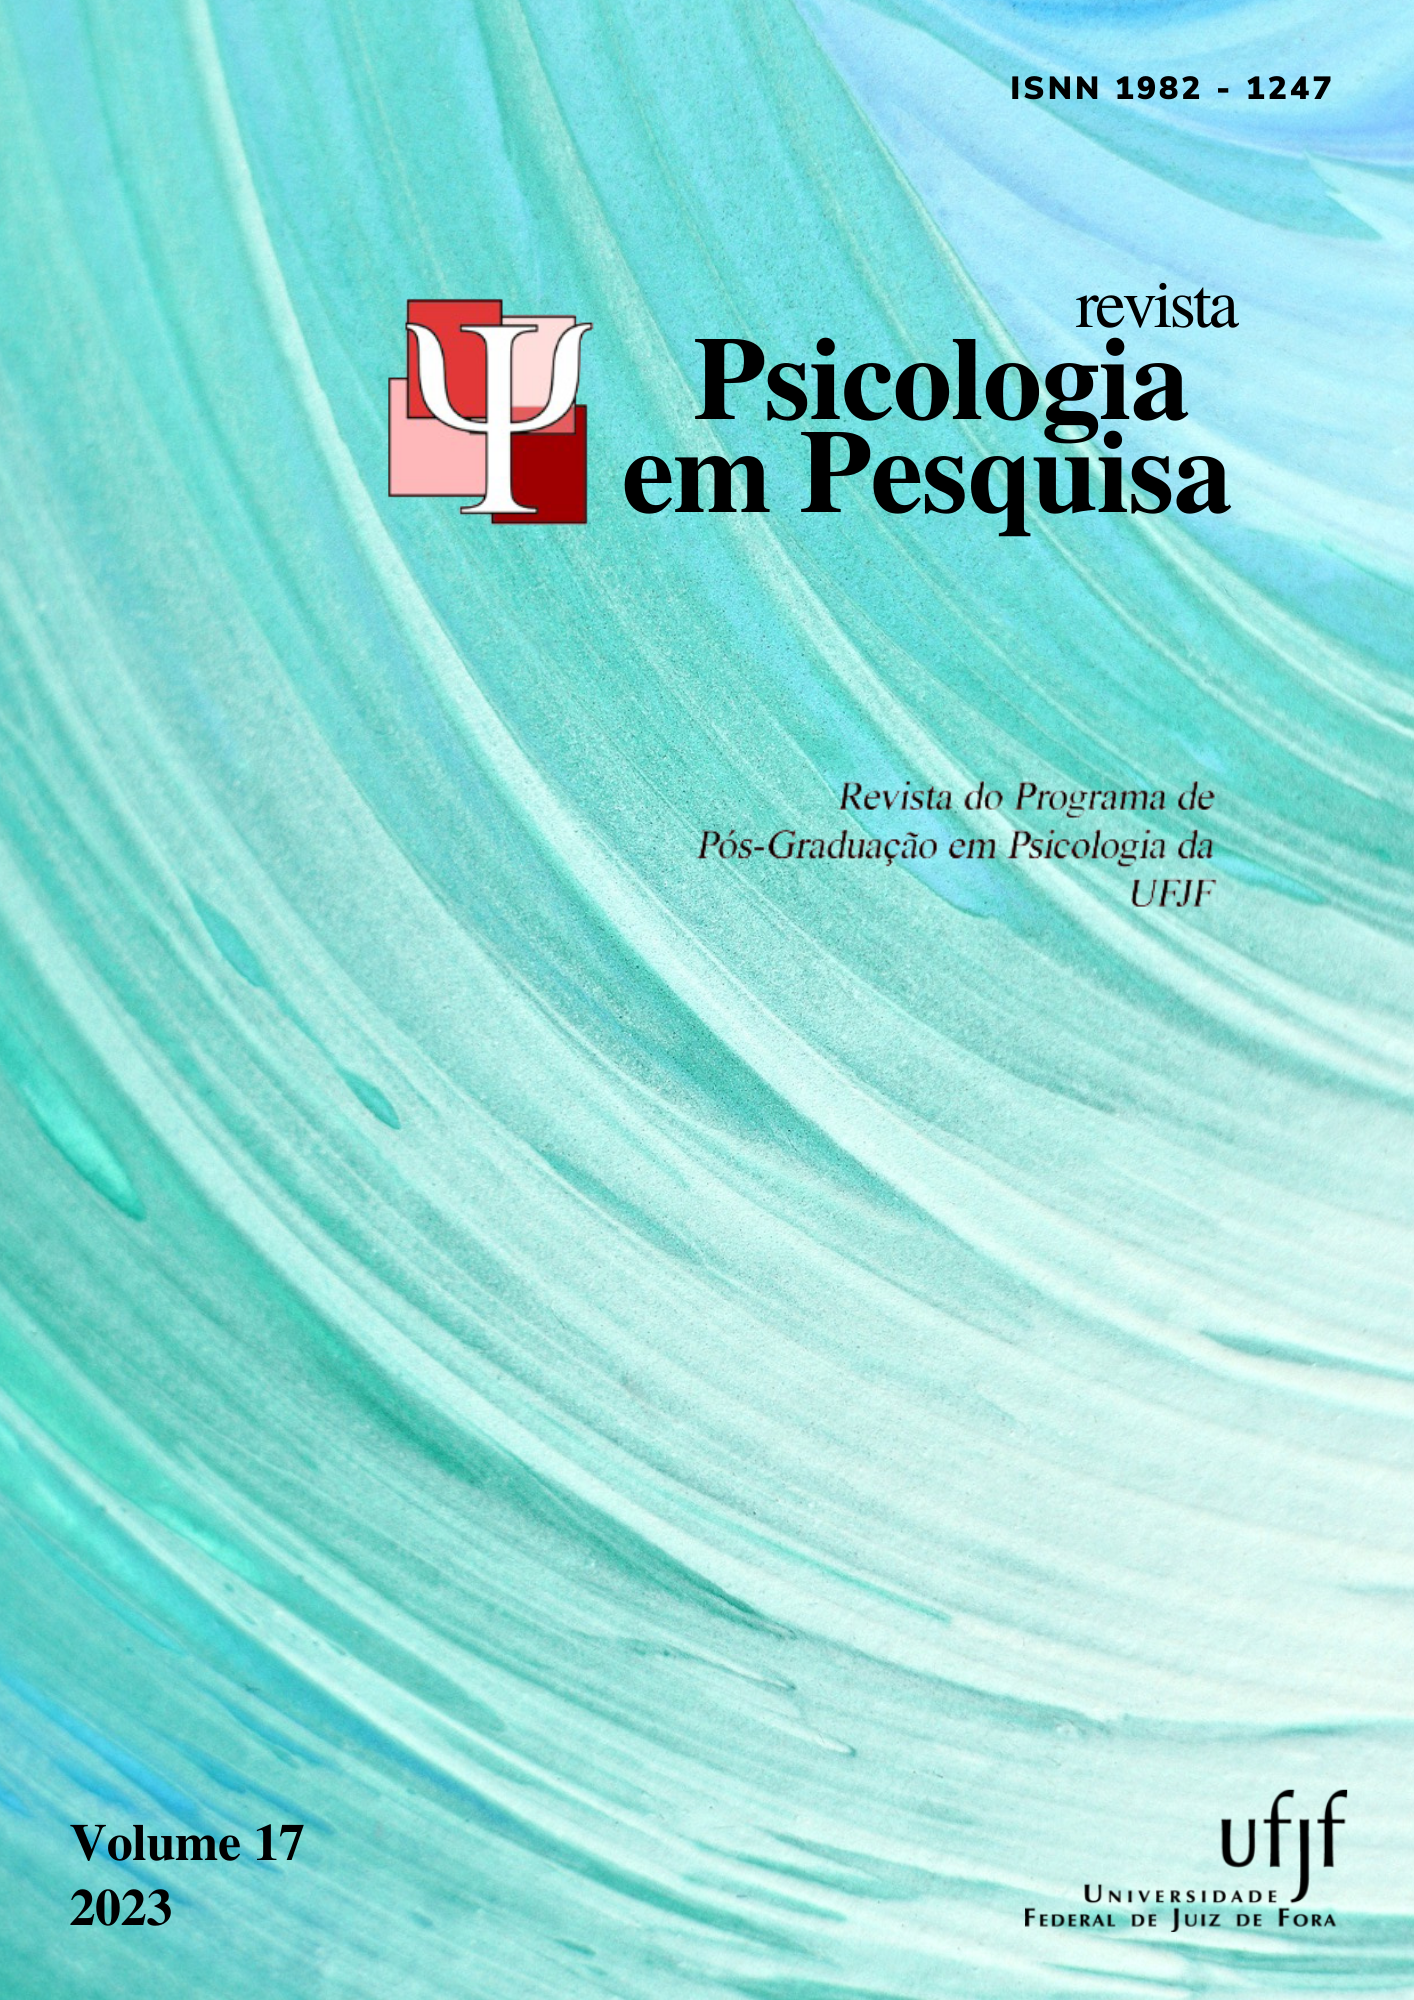 					Ver Vol. 17 Núm. 2 (2023): Revista Psicologia em Pesquisa
				